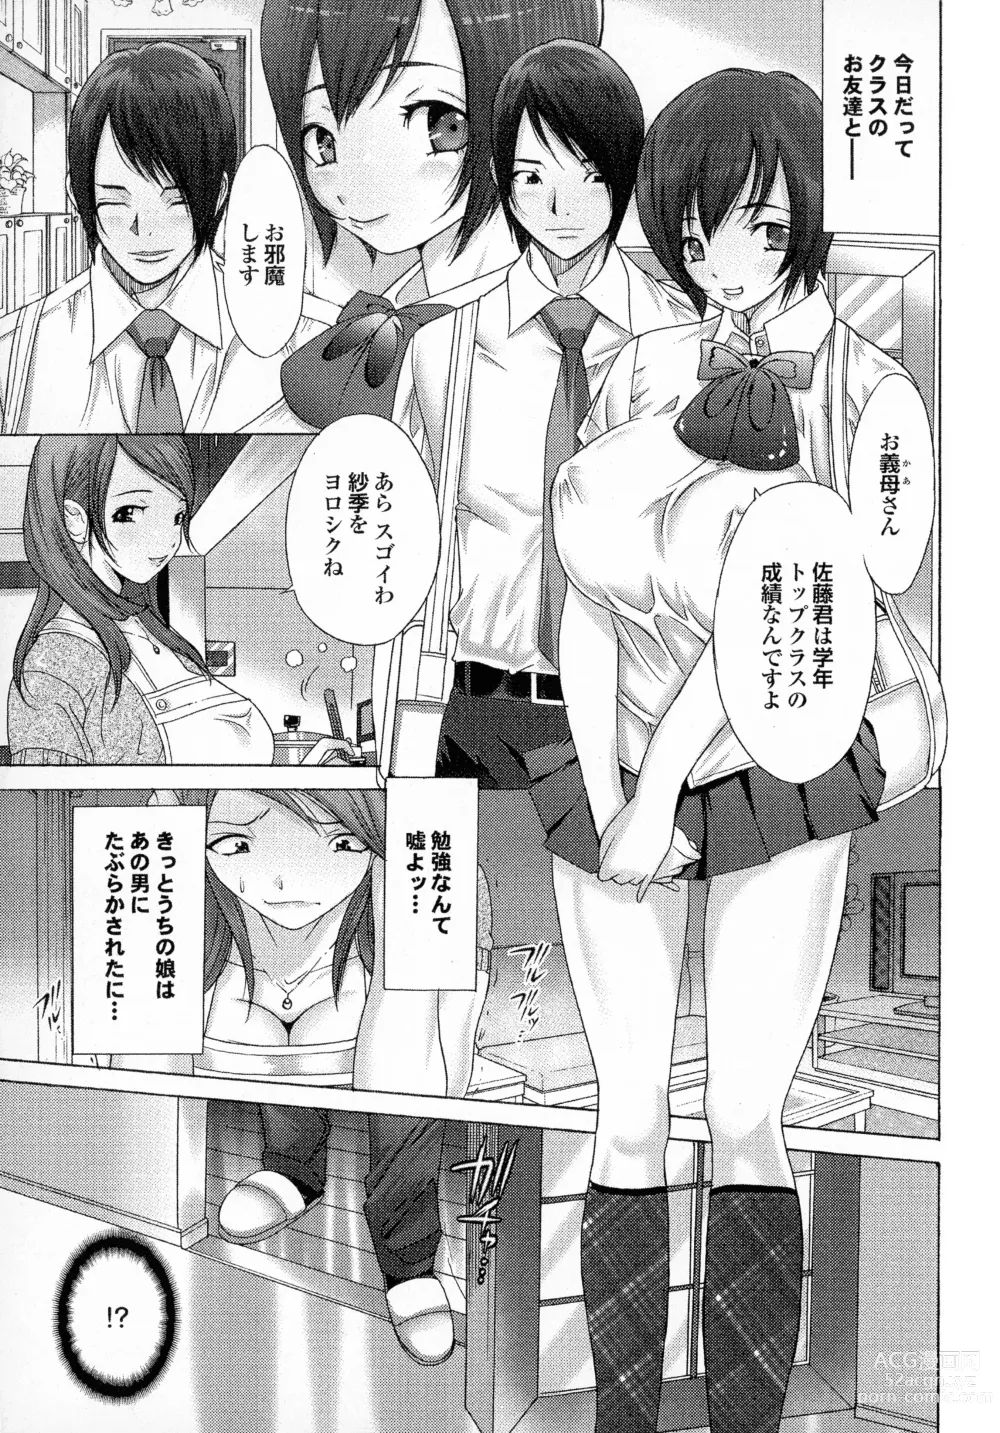 Page 25 of manga Okaa-san mo Issho